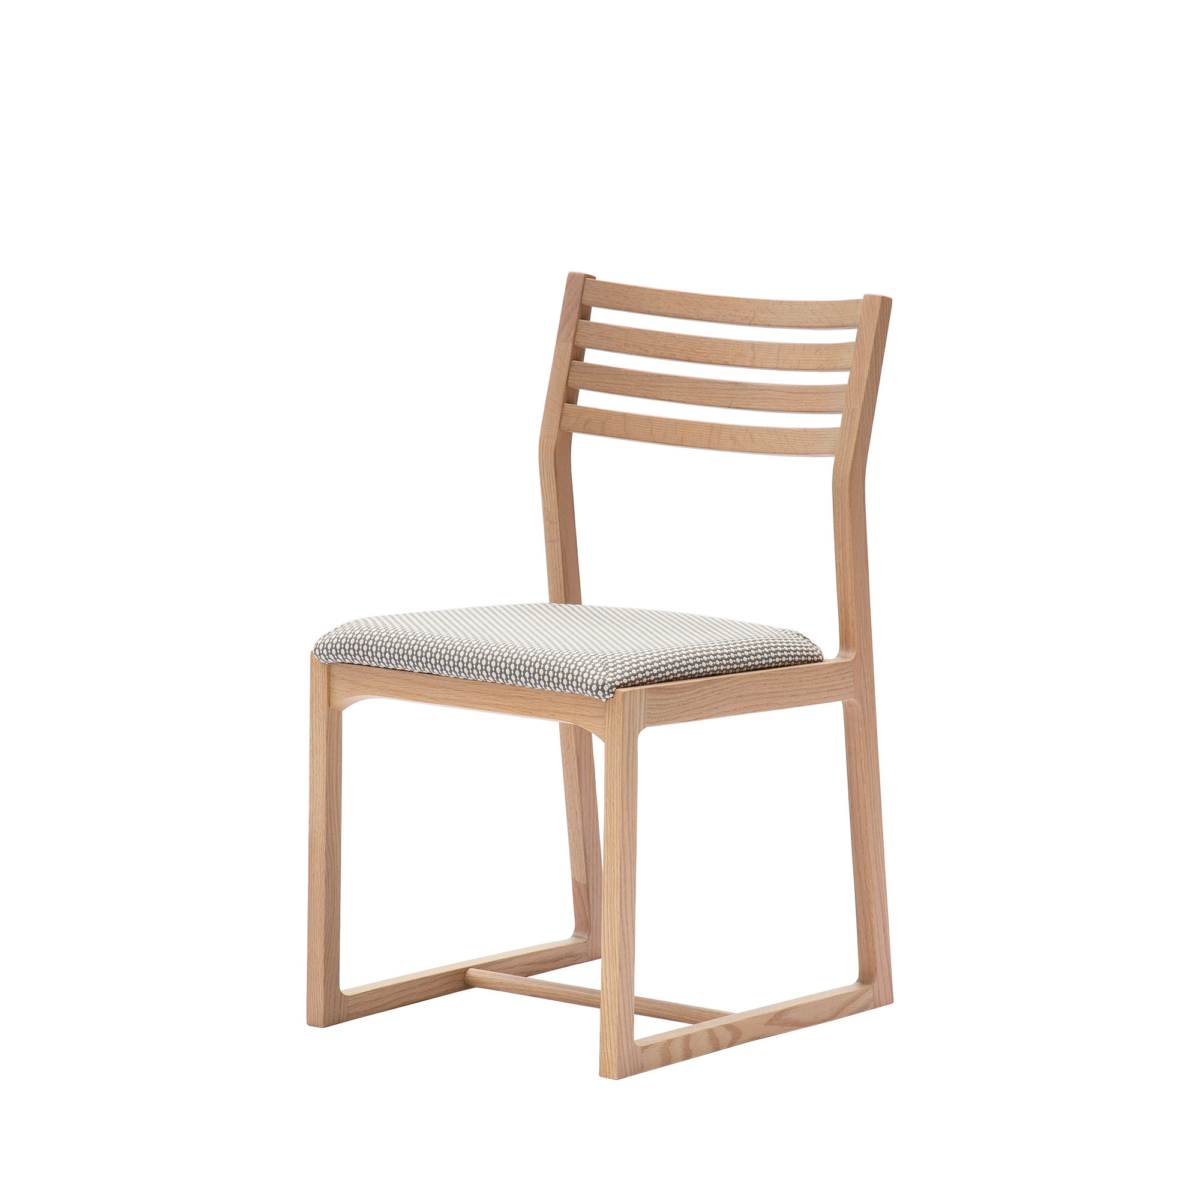 Ghế ngồi làm từ chất liệu gỗ sồi có nhiều ưu điểm thu hút người dùng